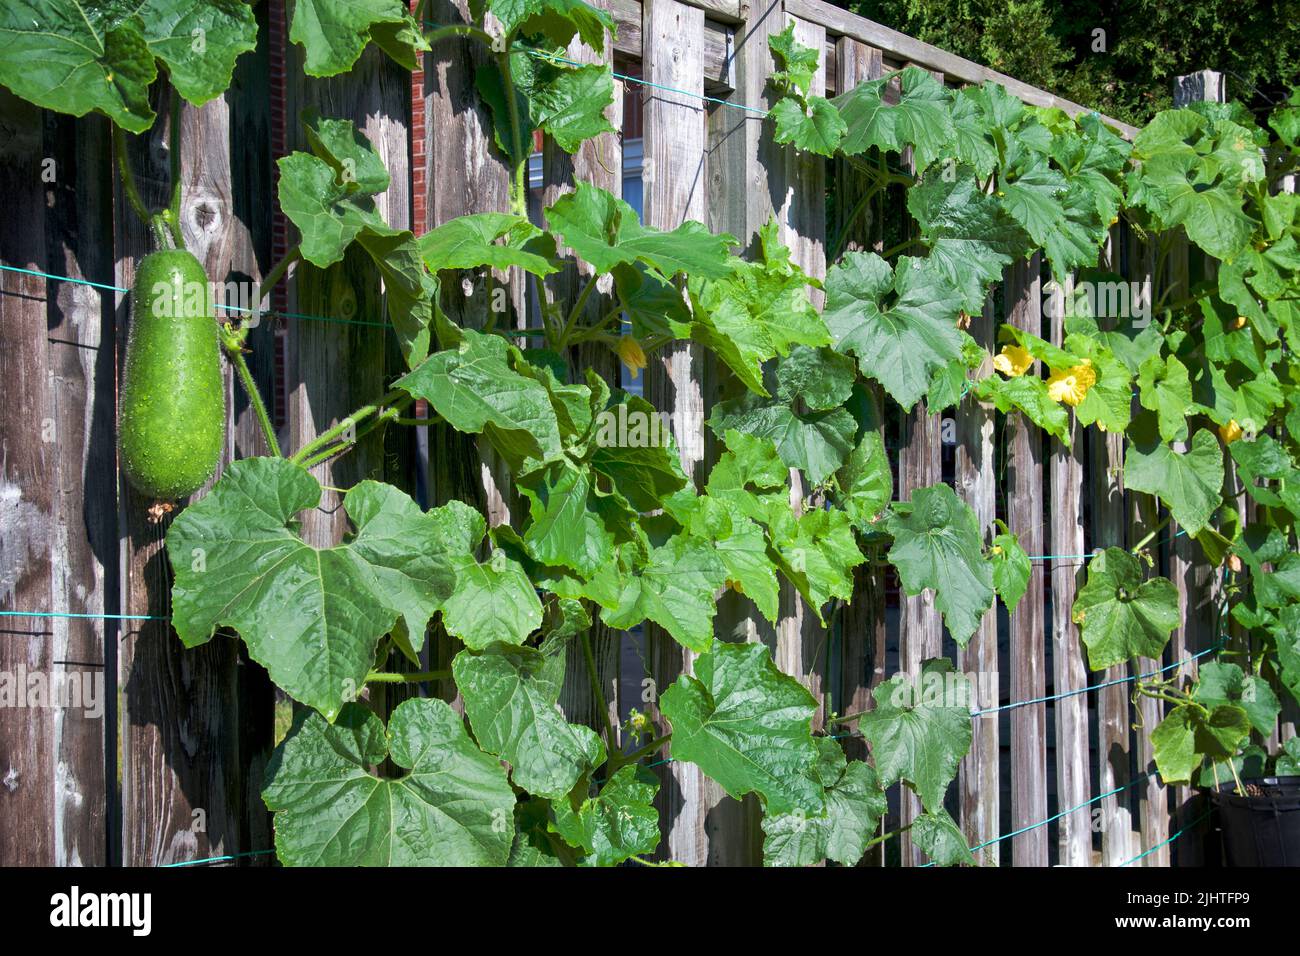 Projet de jardinage urbain. Des flous melons organiques grimpent sur la clôture Banque D'Images